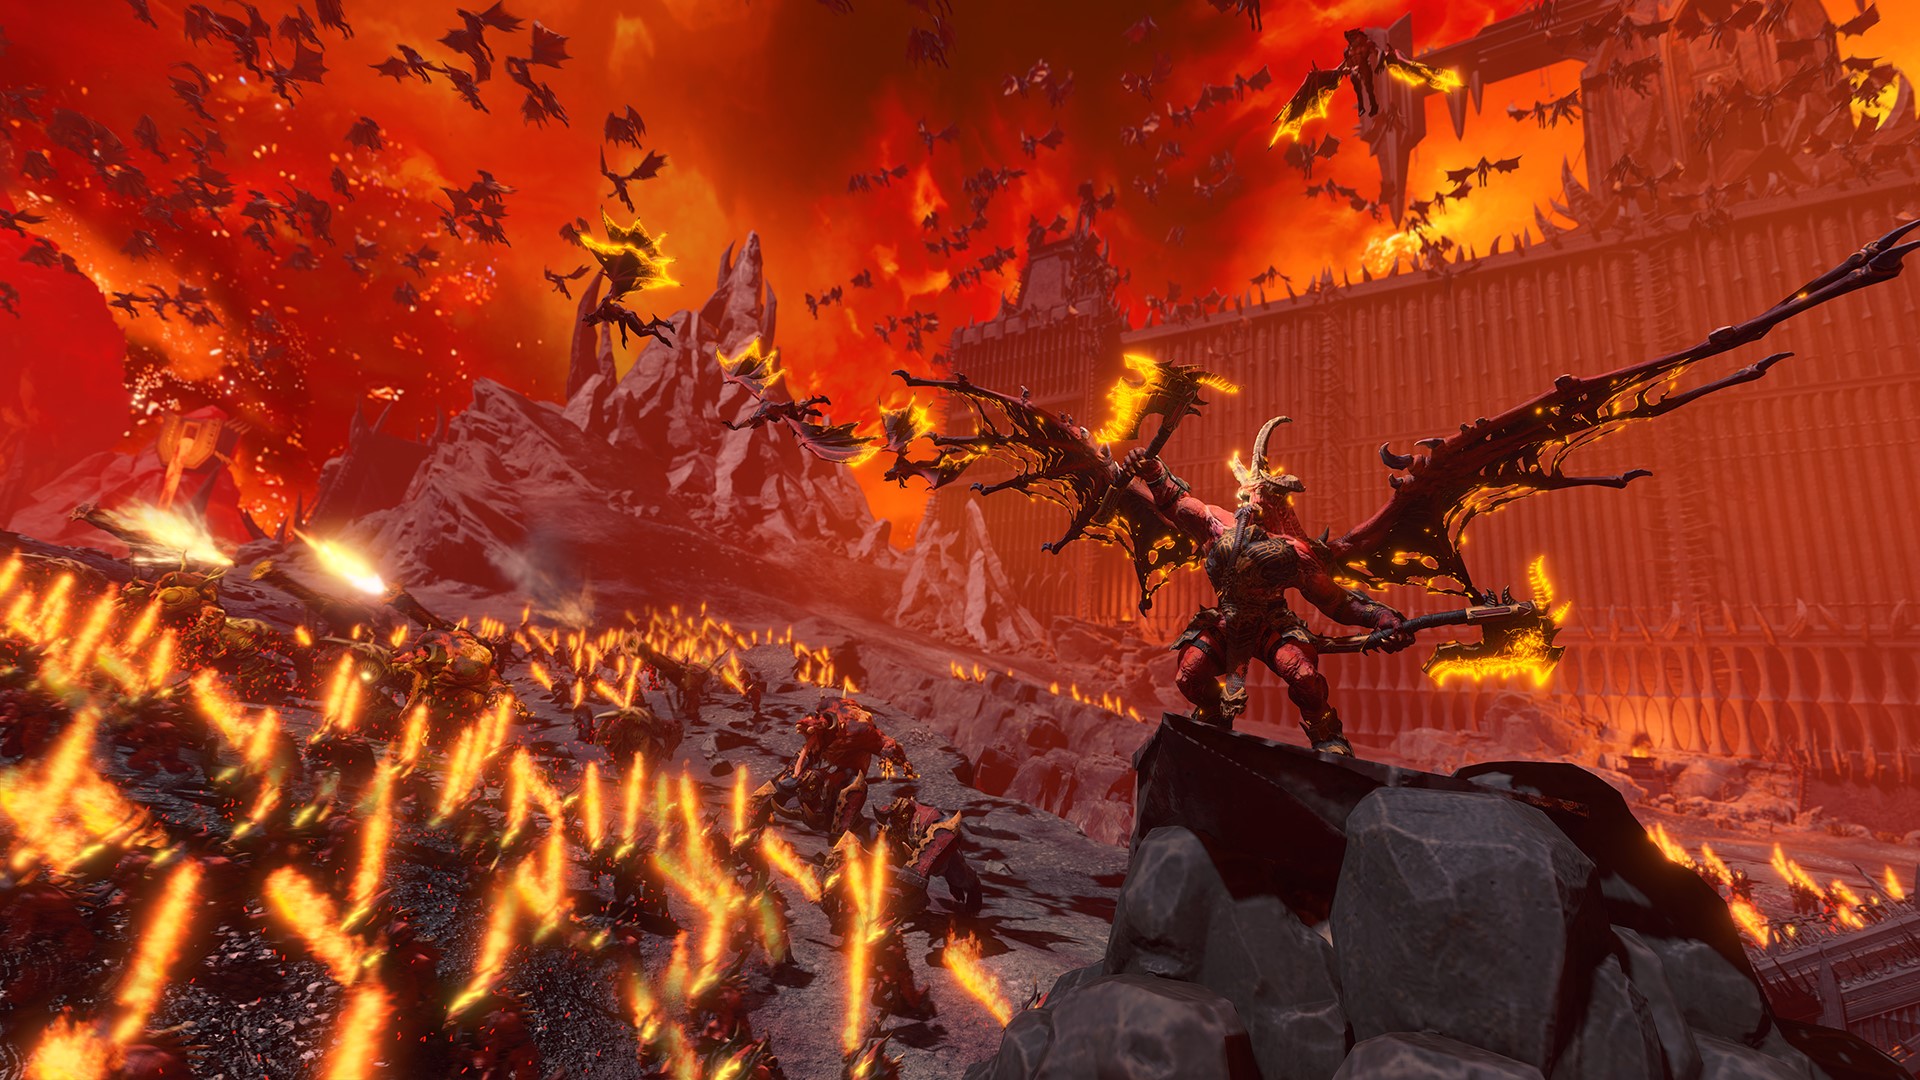 Total War: Warhammer 3’s Daemons of Khorne look metal as hell